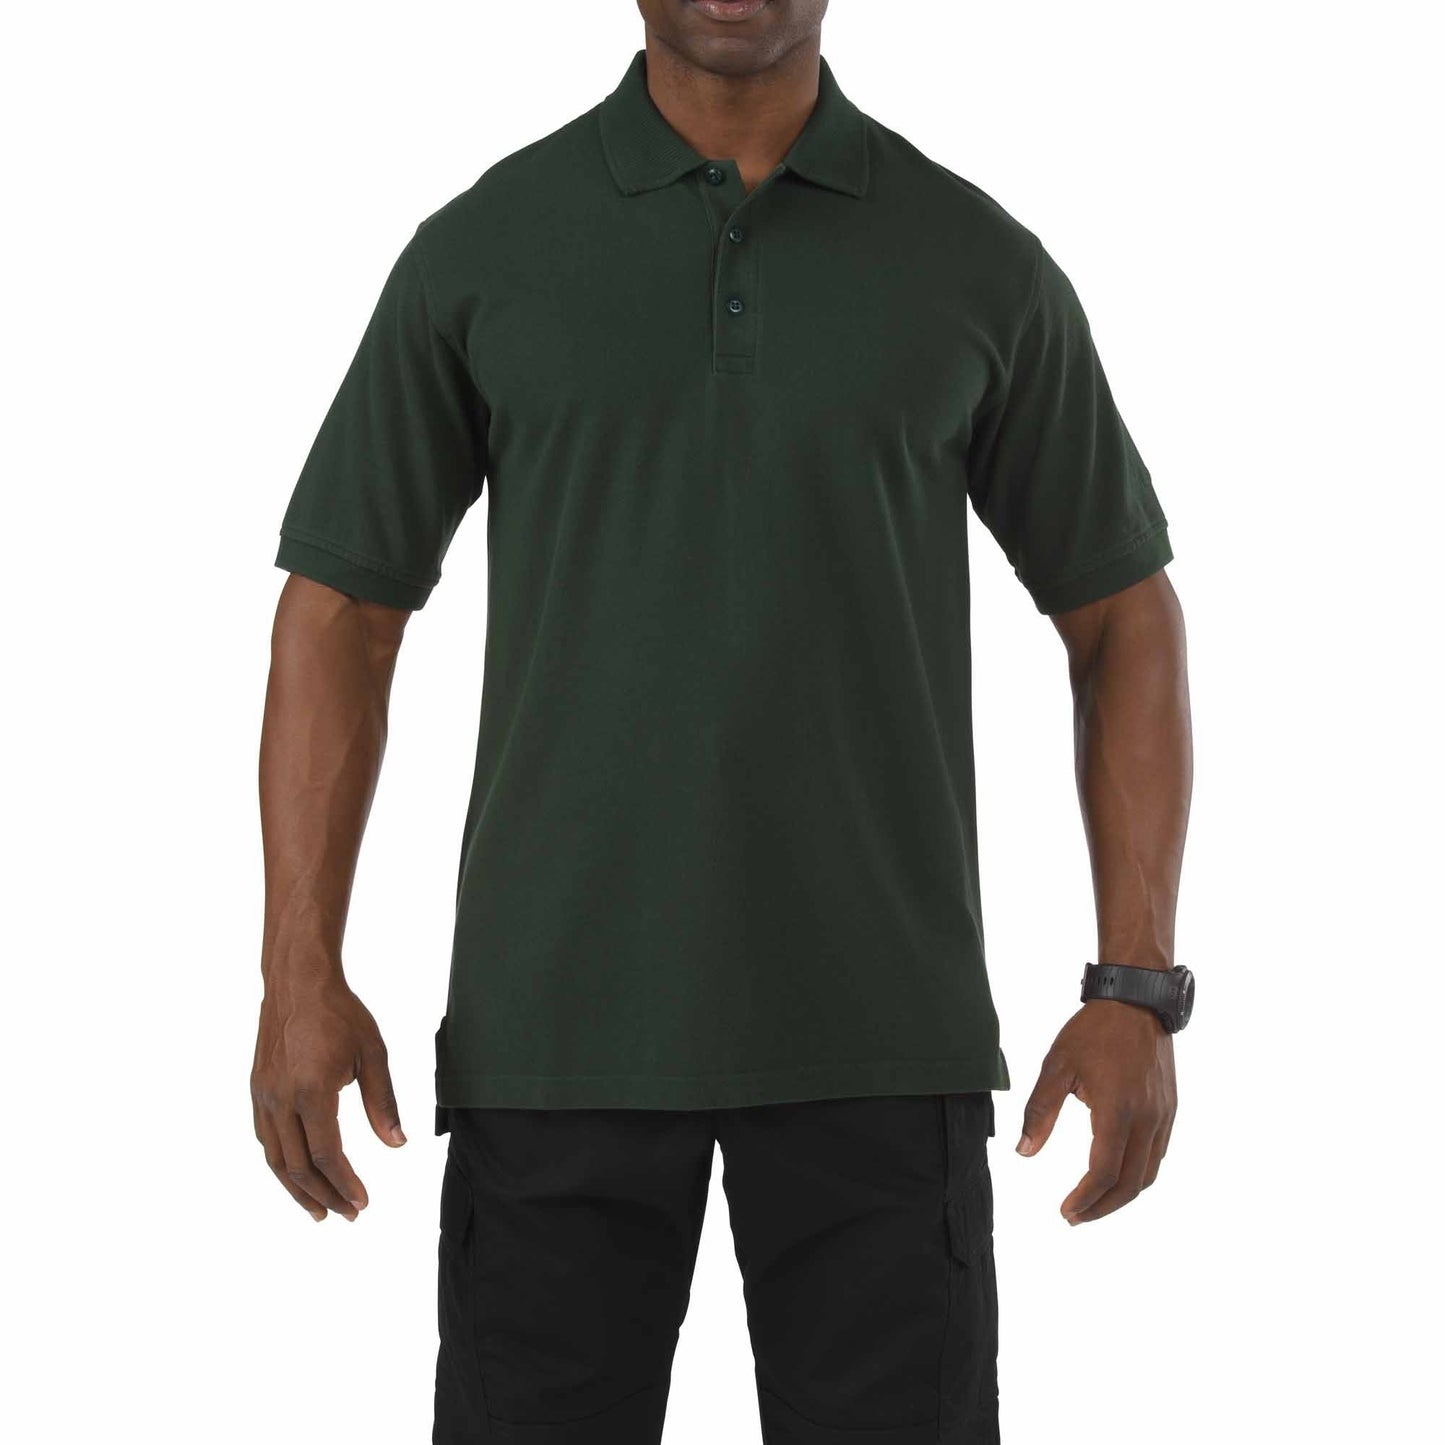 5.11 Tactical Professional Short Sleeve Polo Shirt LE Green Tactical Distributors Ltd New Zealand